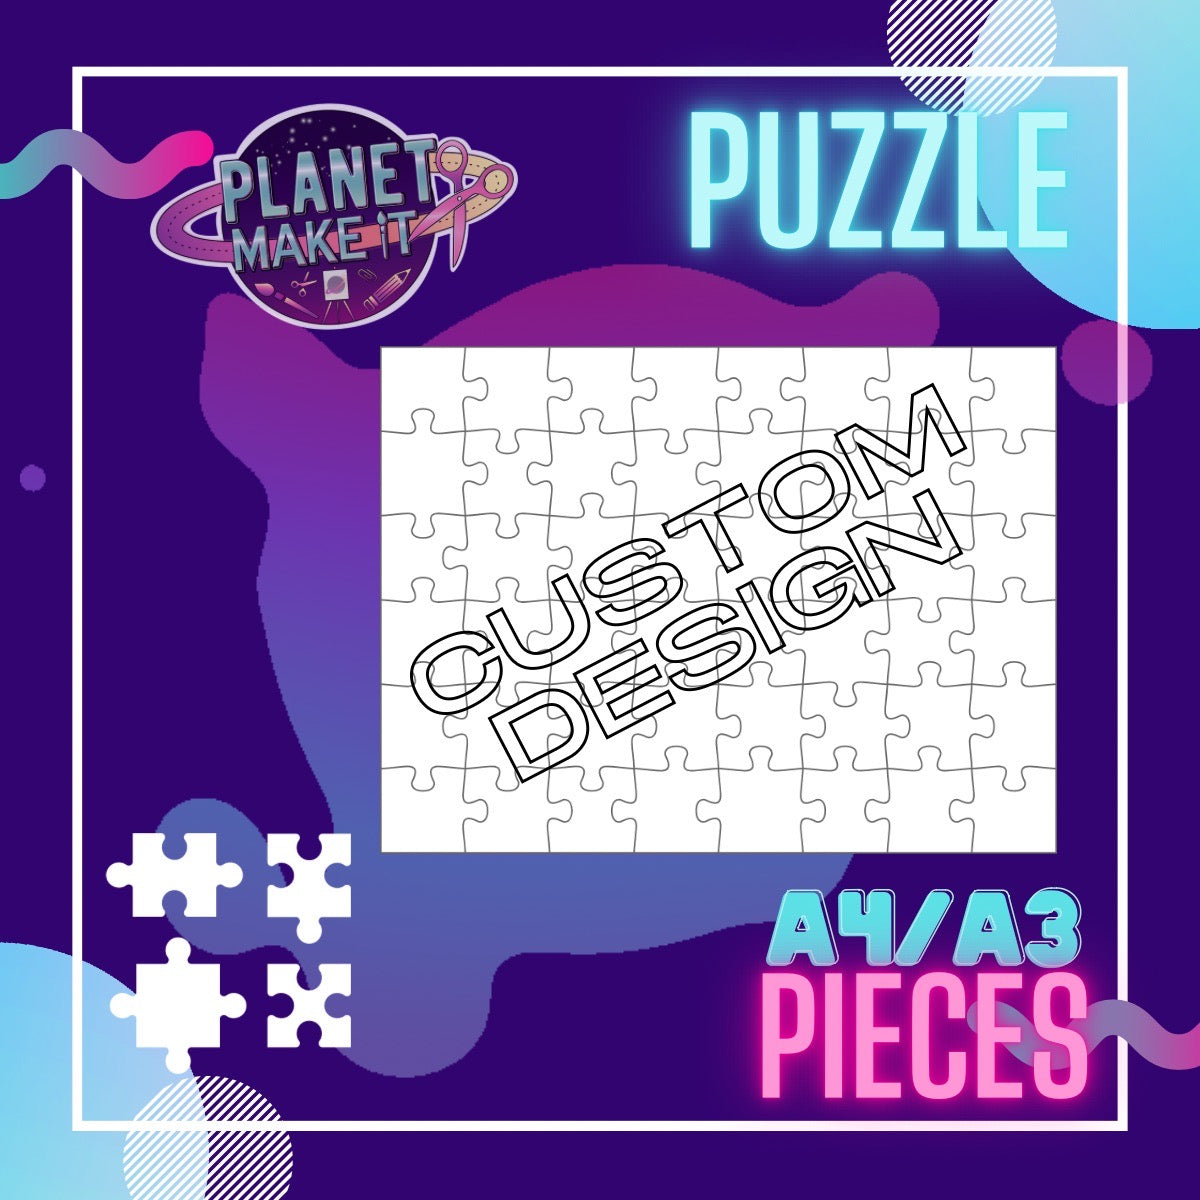 Puzzle - Custom Image